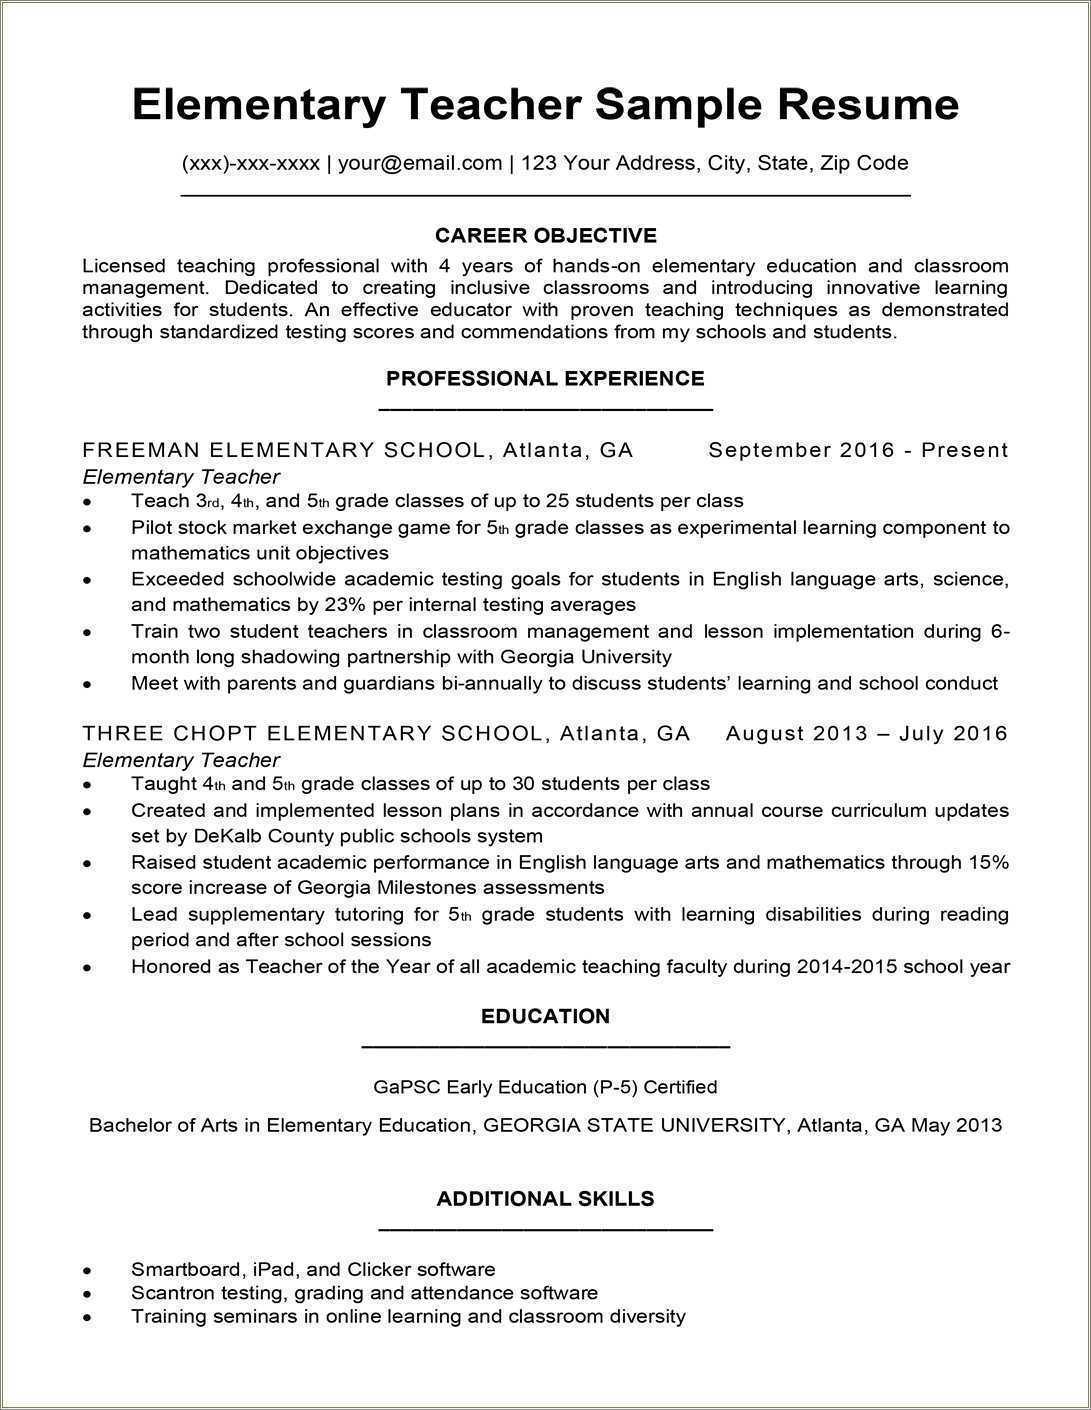 Applicant Resume Sample For Teacher